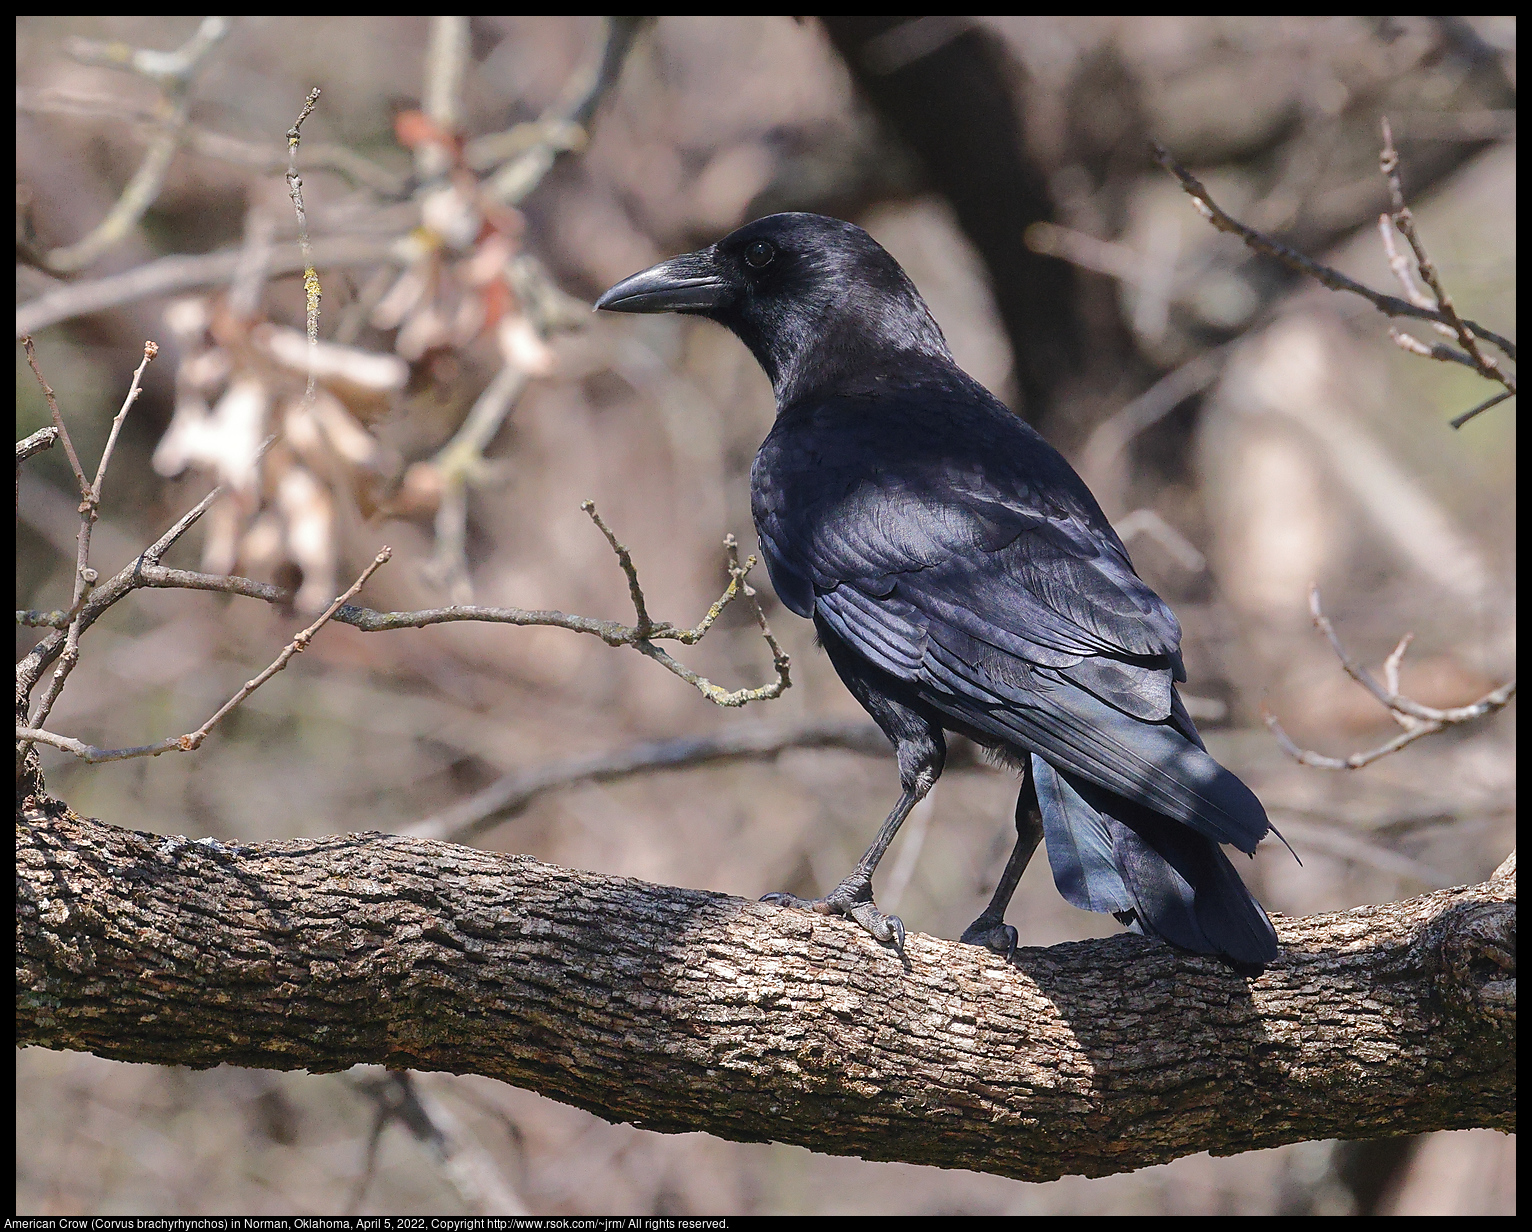 American Crow (Corvus brachyrhynchos) in Norman, Oklahoma, April 5, 2022